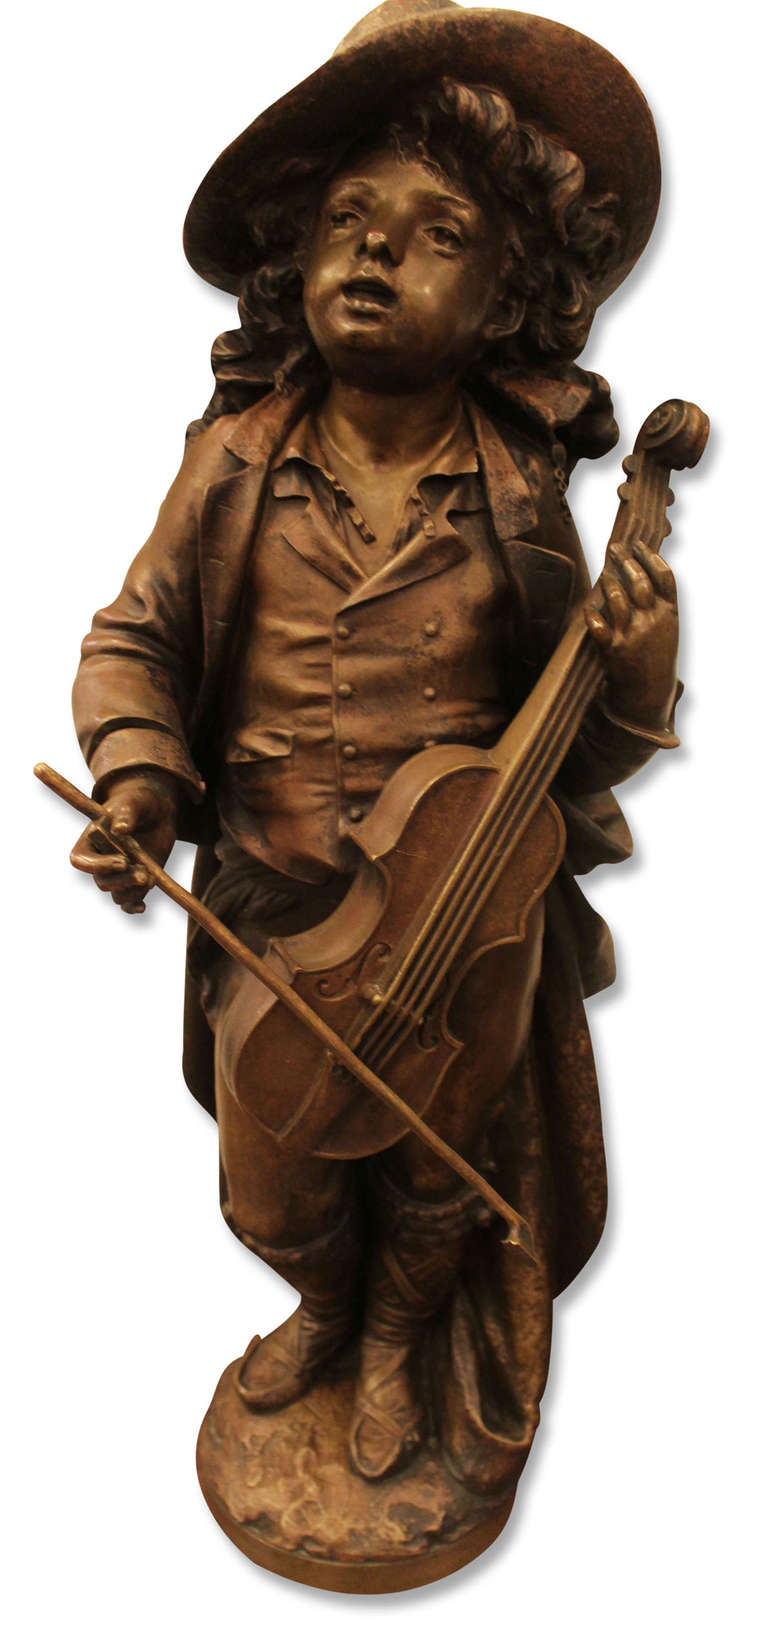 Une grande version du bronze du 19e siècle représentant un garçon avec un violon par Adolph Maubach, avec une patine magnifique. Veuillez noter que cet article se trouve dans l'un de nos bureaux de New York.